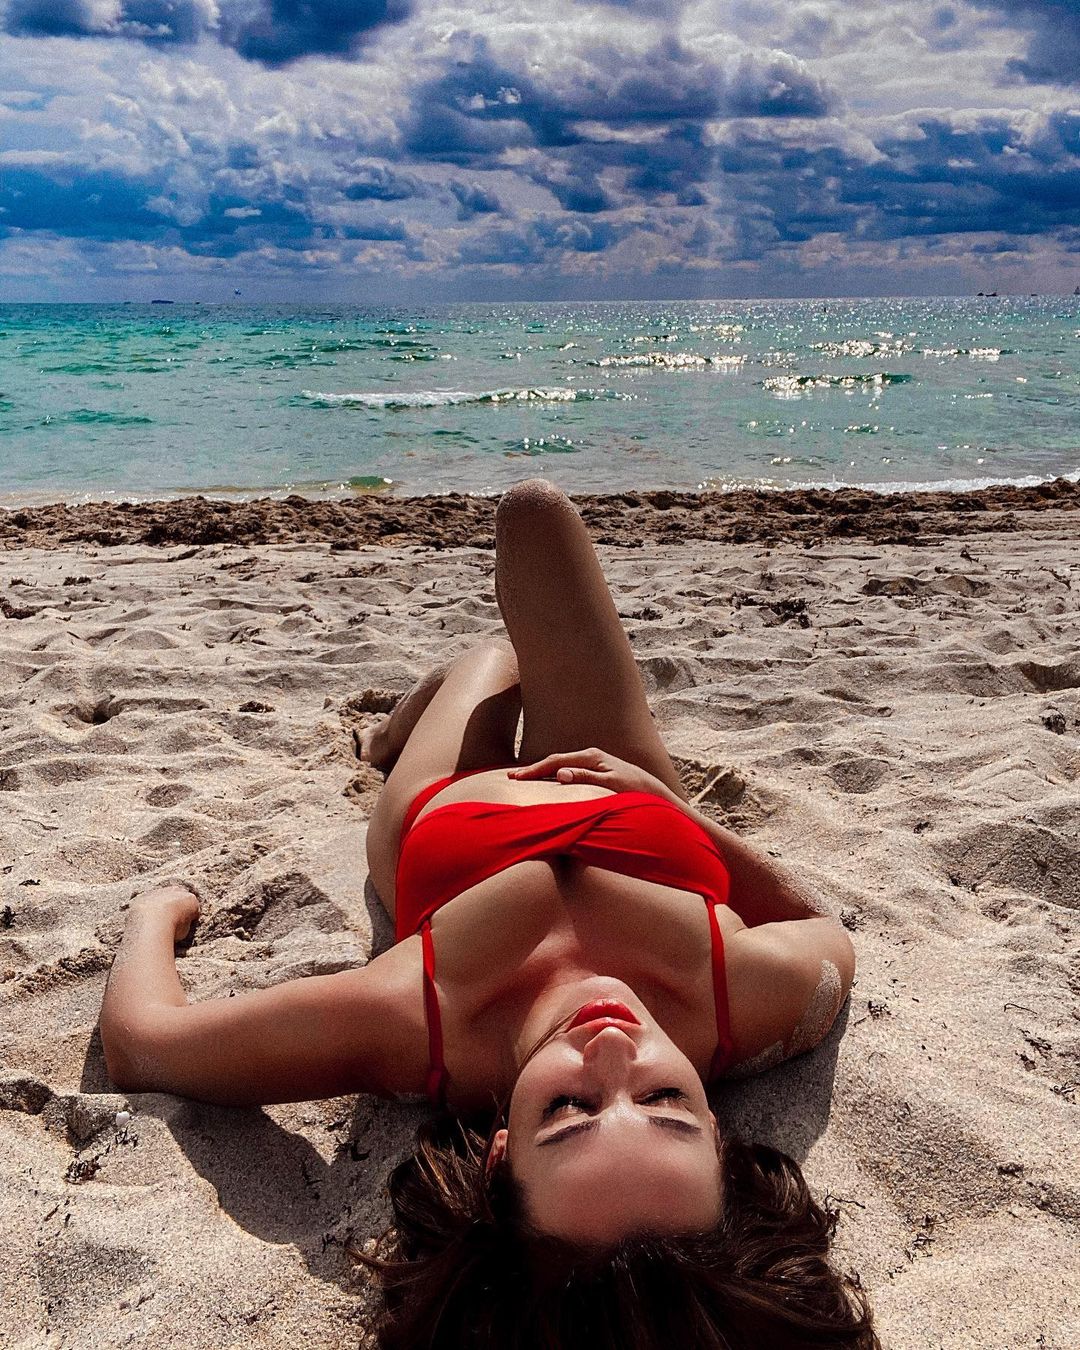 Анфиса Чехова опубликовала горячие фотографии в красном бикини на пляже